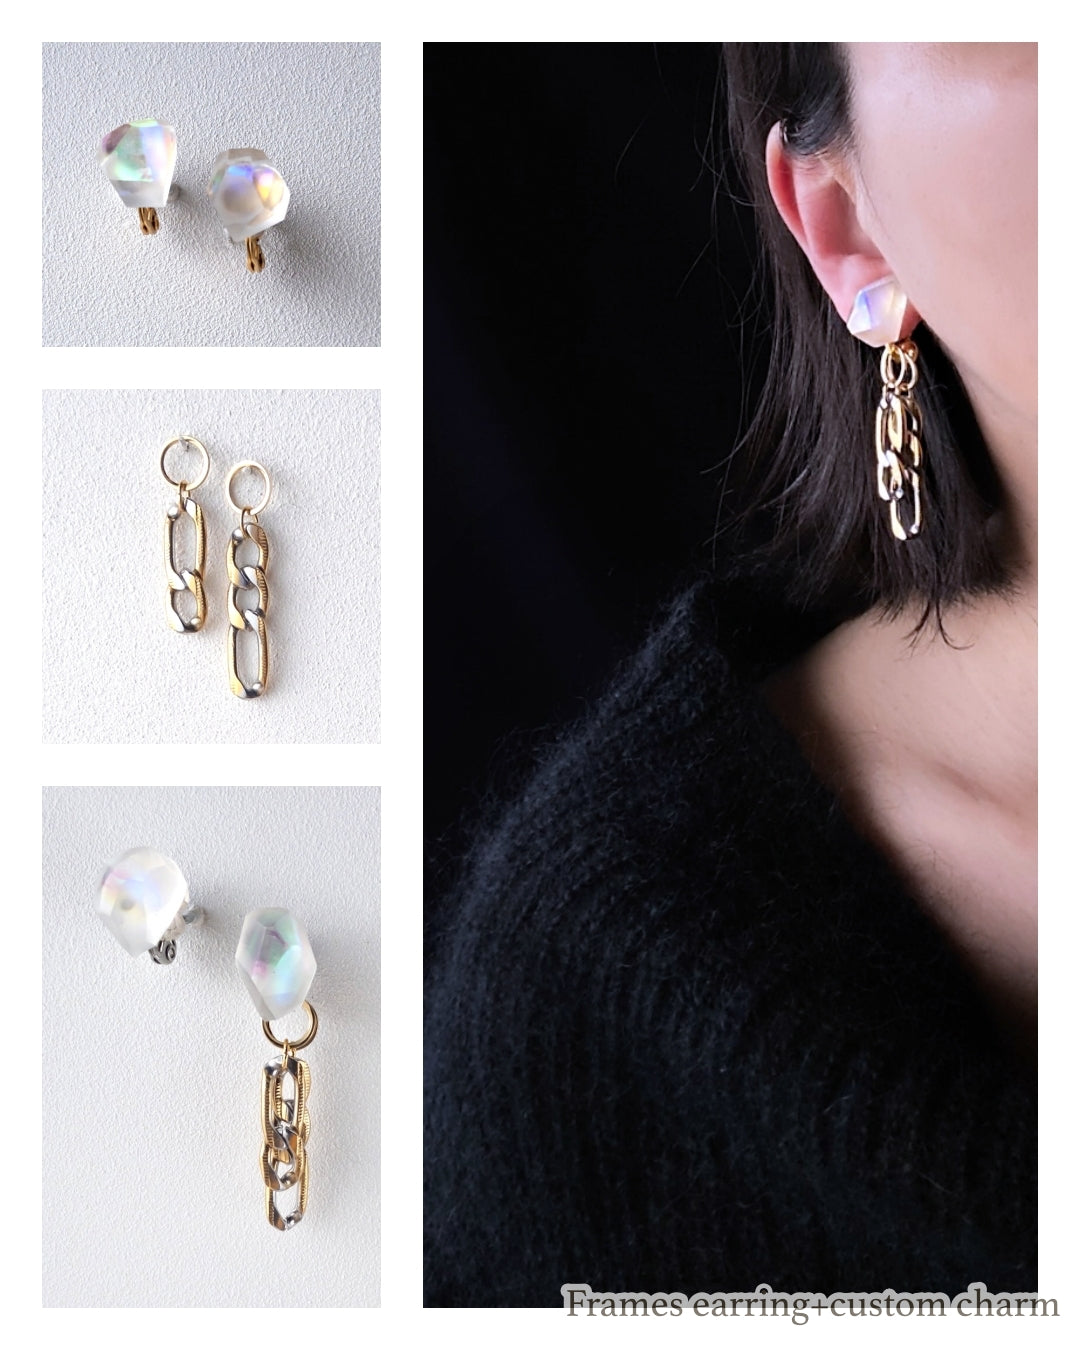 Frames earrings / Alice in wonderland_frost clear 7-b